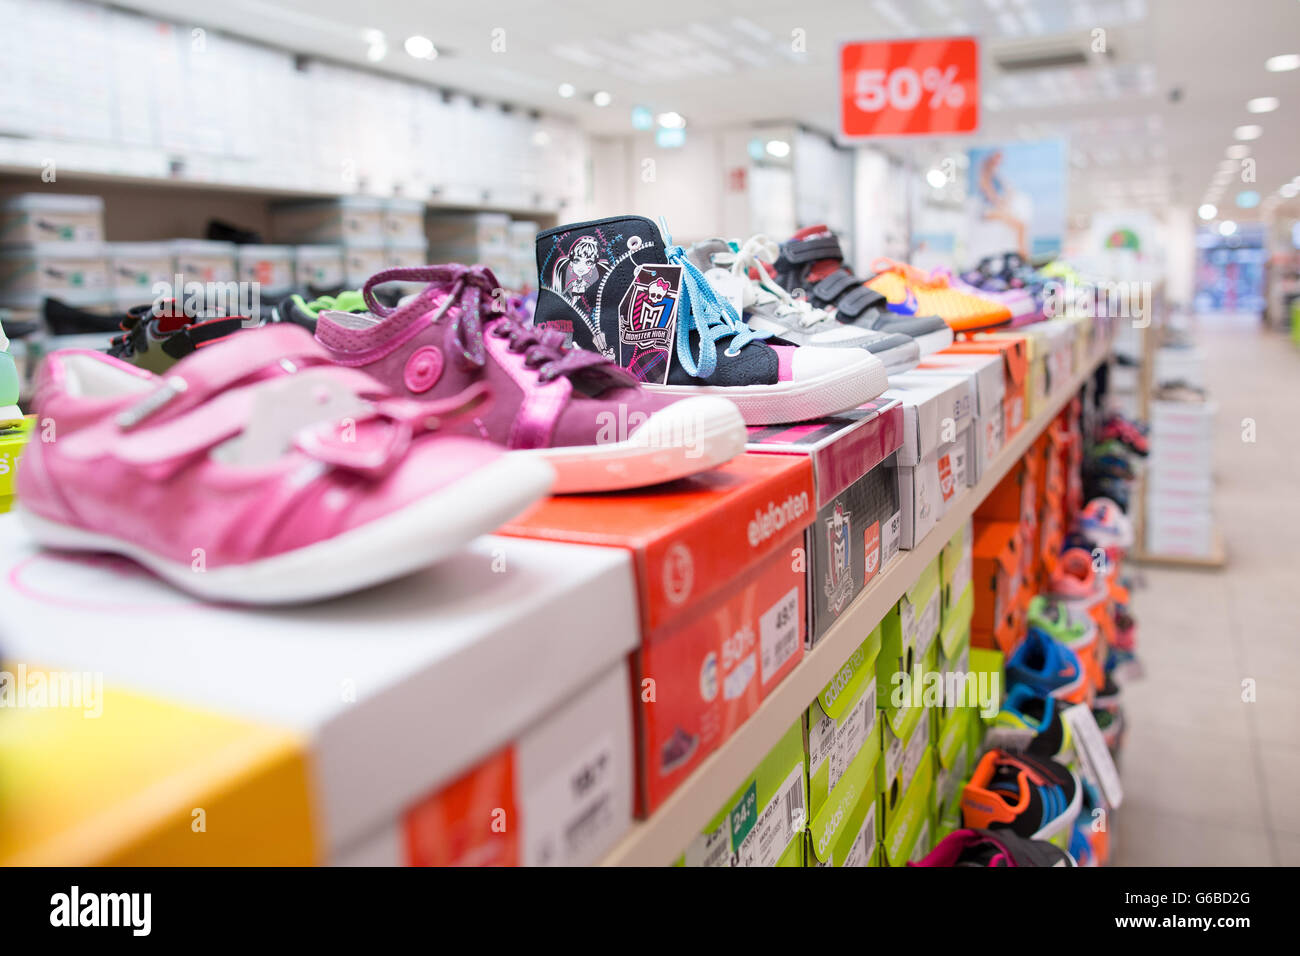 Düsseldorf, Deutschland. 24. Juni 2016. Schuhe zum Verkauf an einen  Deichmann speichern in Düsseldorf, 24. Juni 2016. Foto: MAJA  HITIJ/Dpa/Alamy Live News Stockfotografie - Alamy